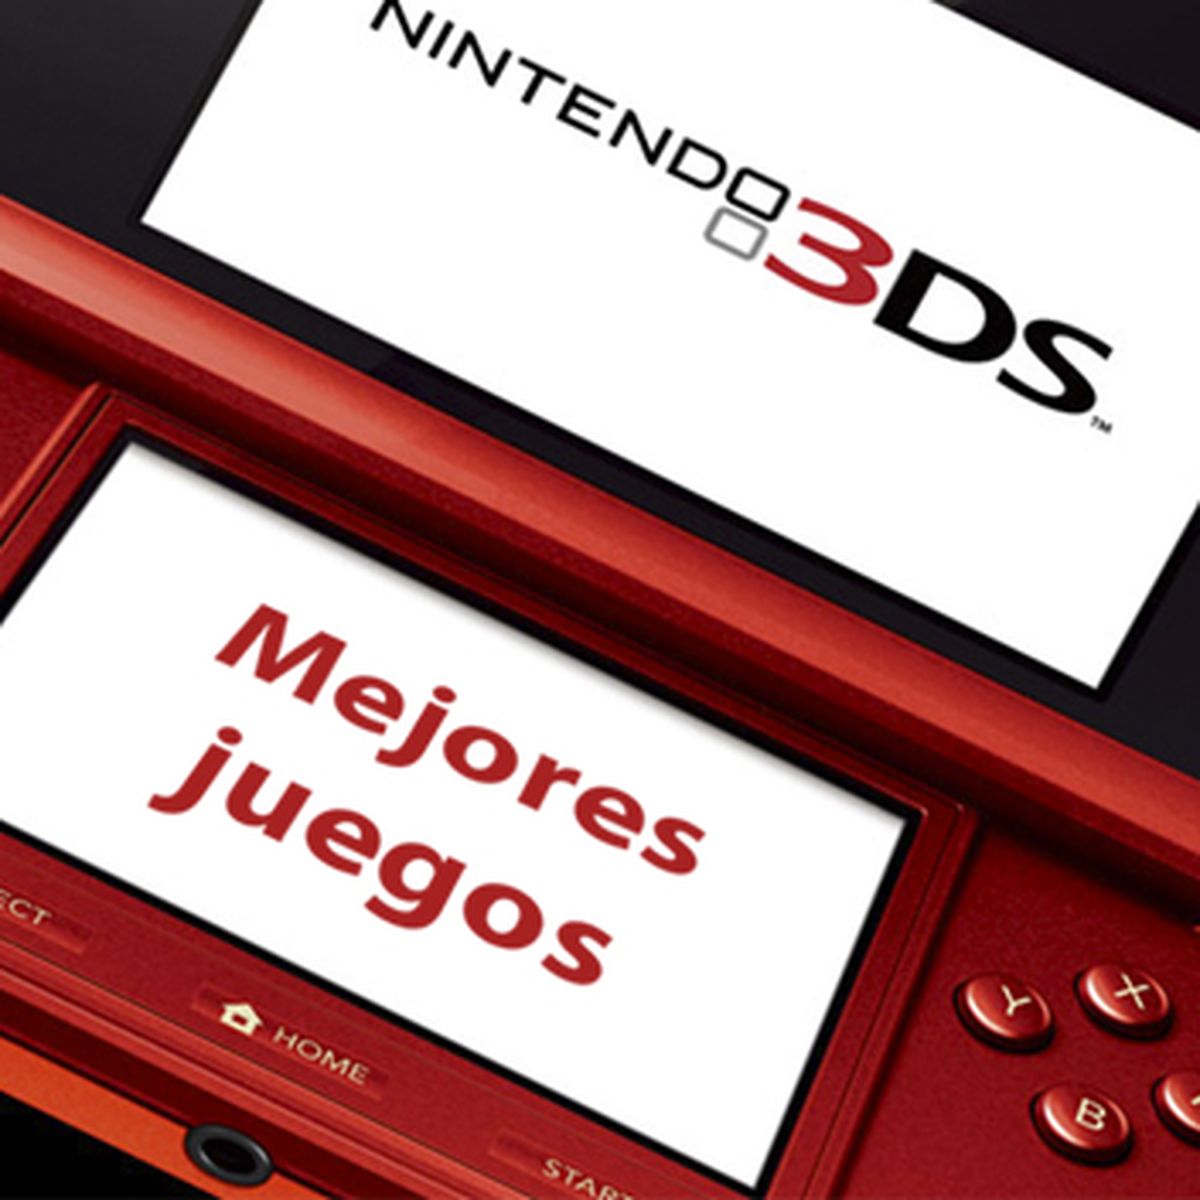 Juegos de Nintendo 3DS (solo carro) elige y elige